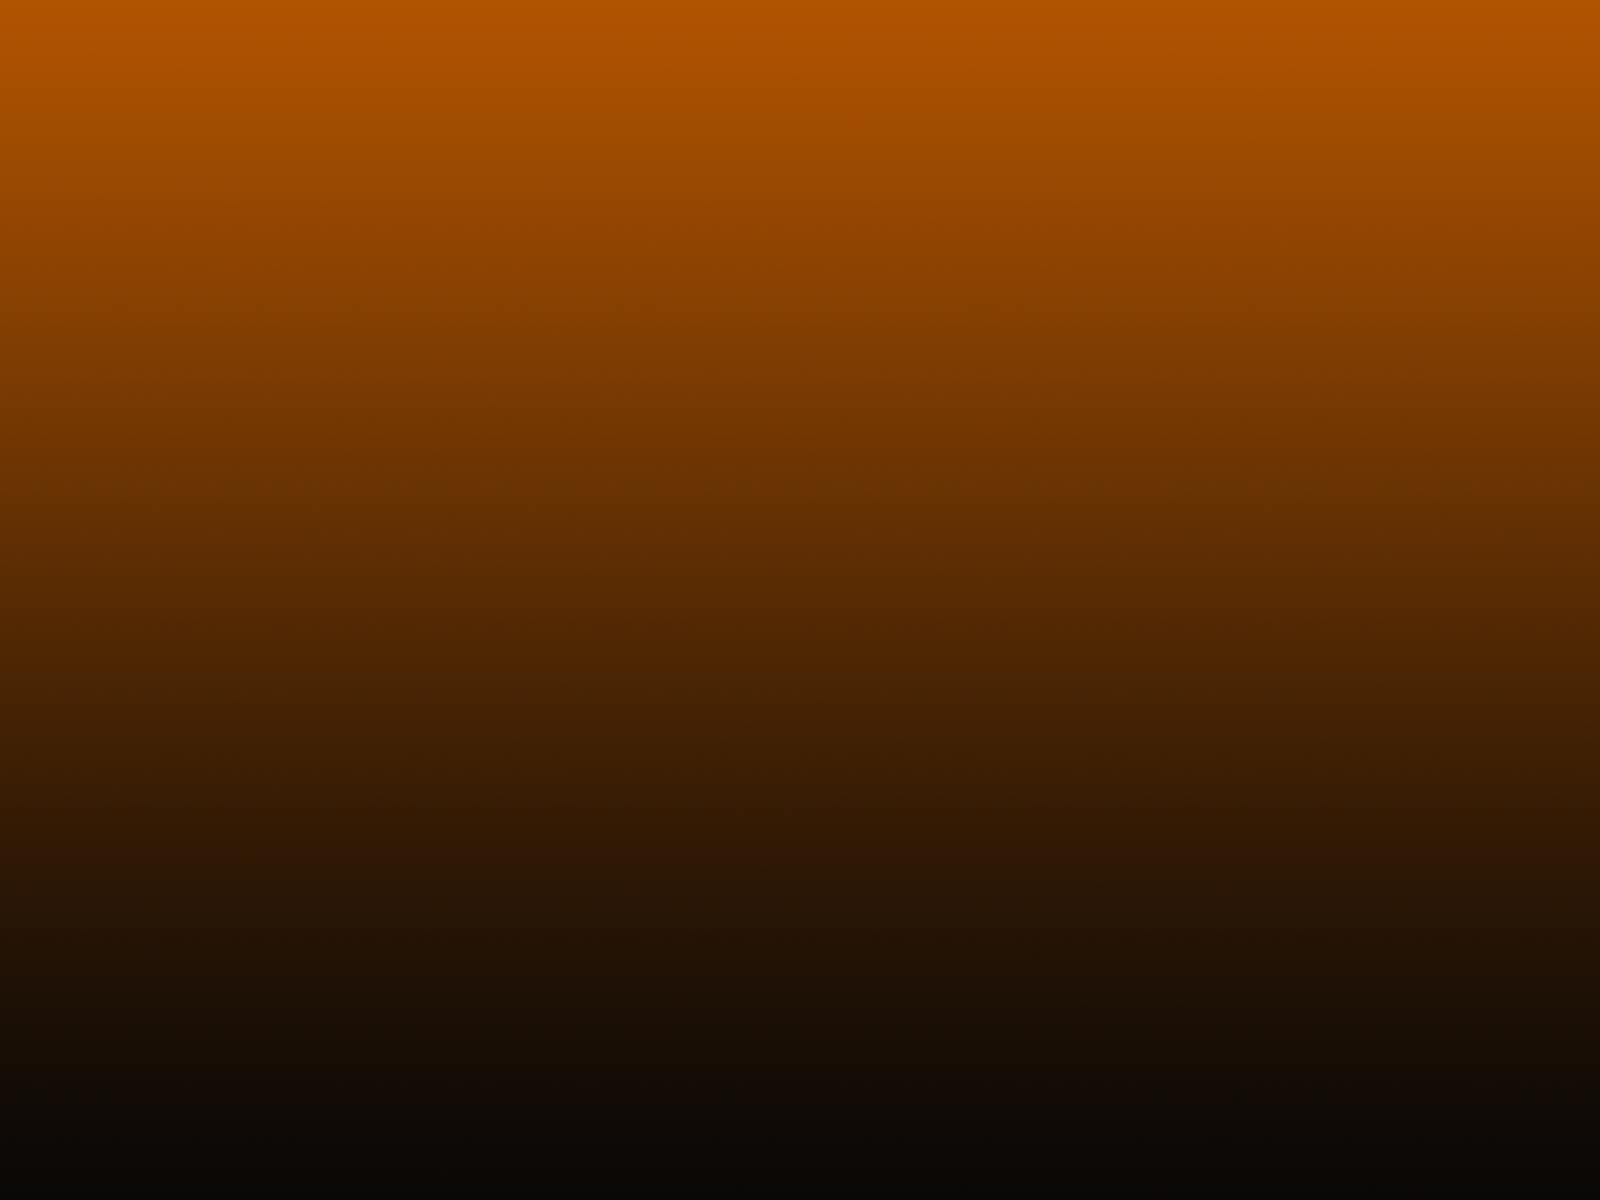 Desktop black and orange background download